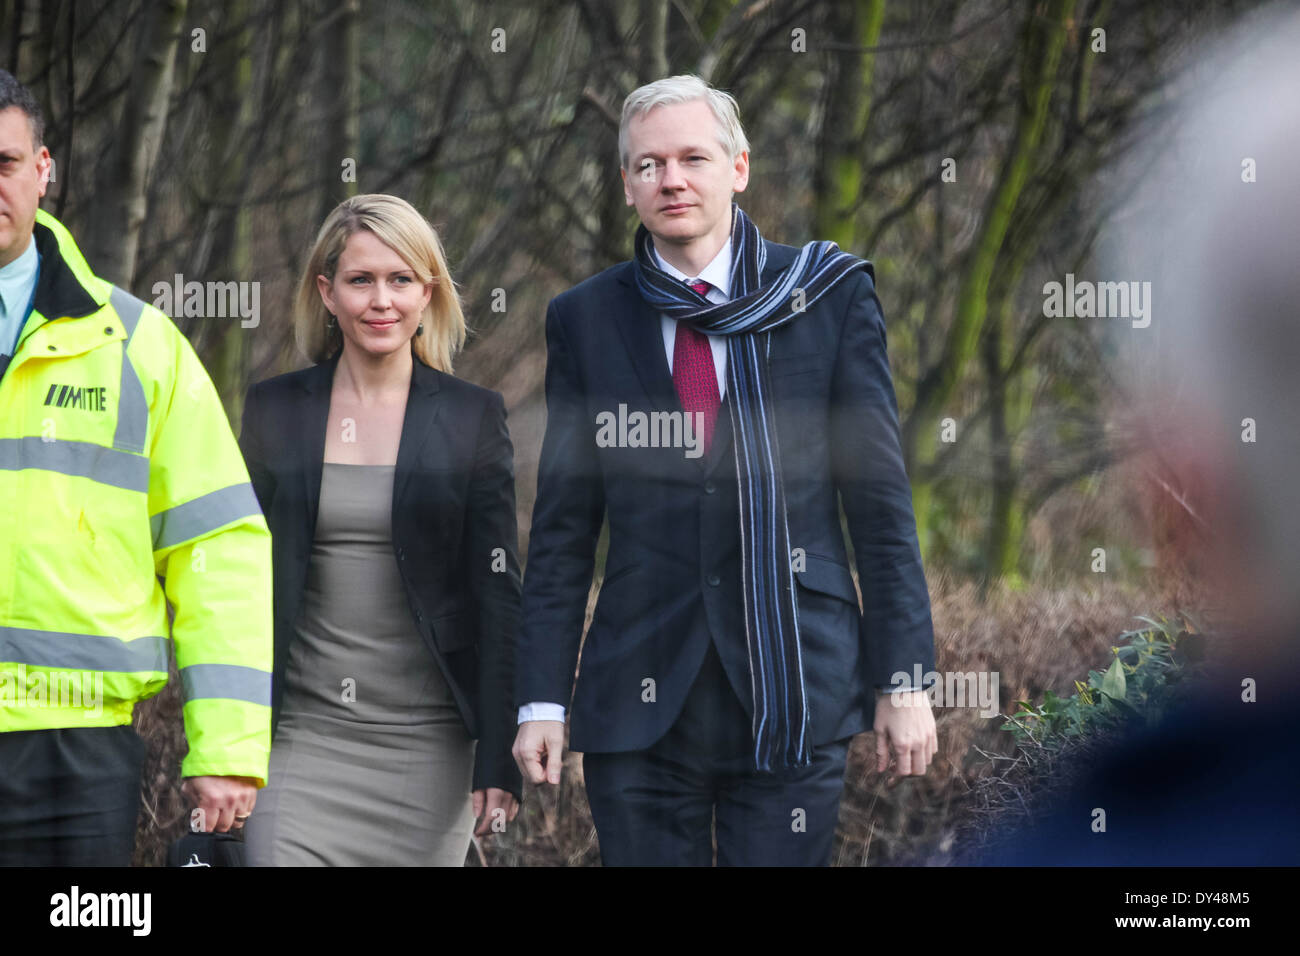 Le fondateur de Wikileaks, Julian Assange et son avocat, Jennifer Robinson arriver au tribunal d'instance Belmarsh à Woolwich, Londres. Banque D'Images